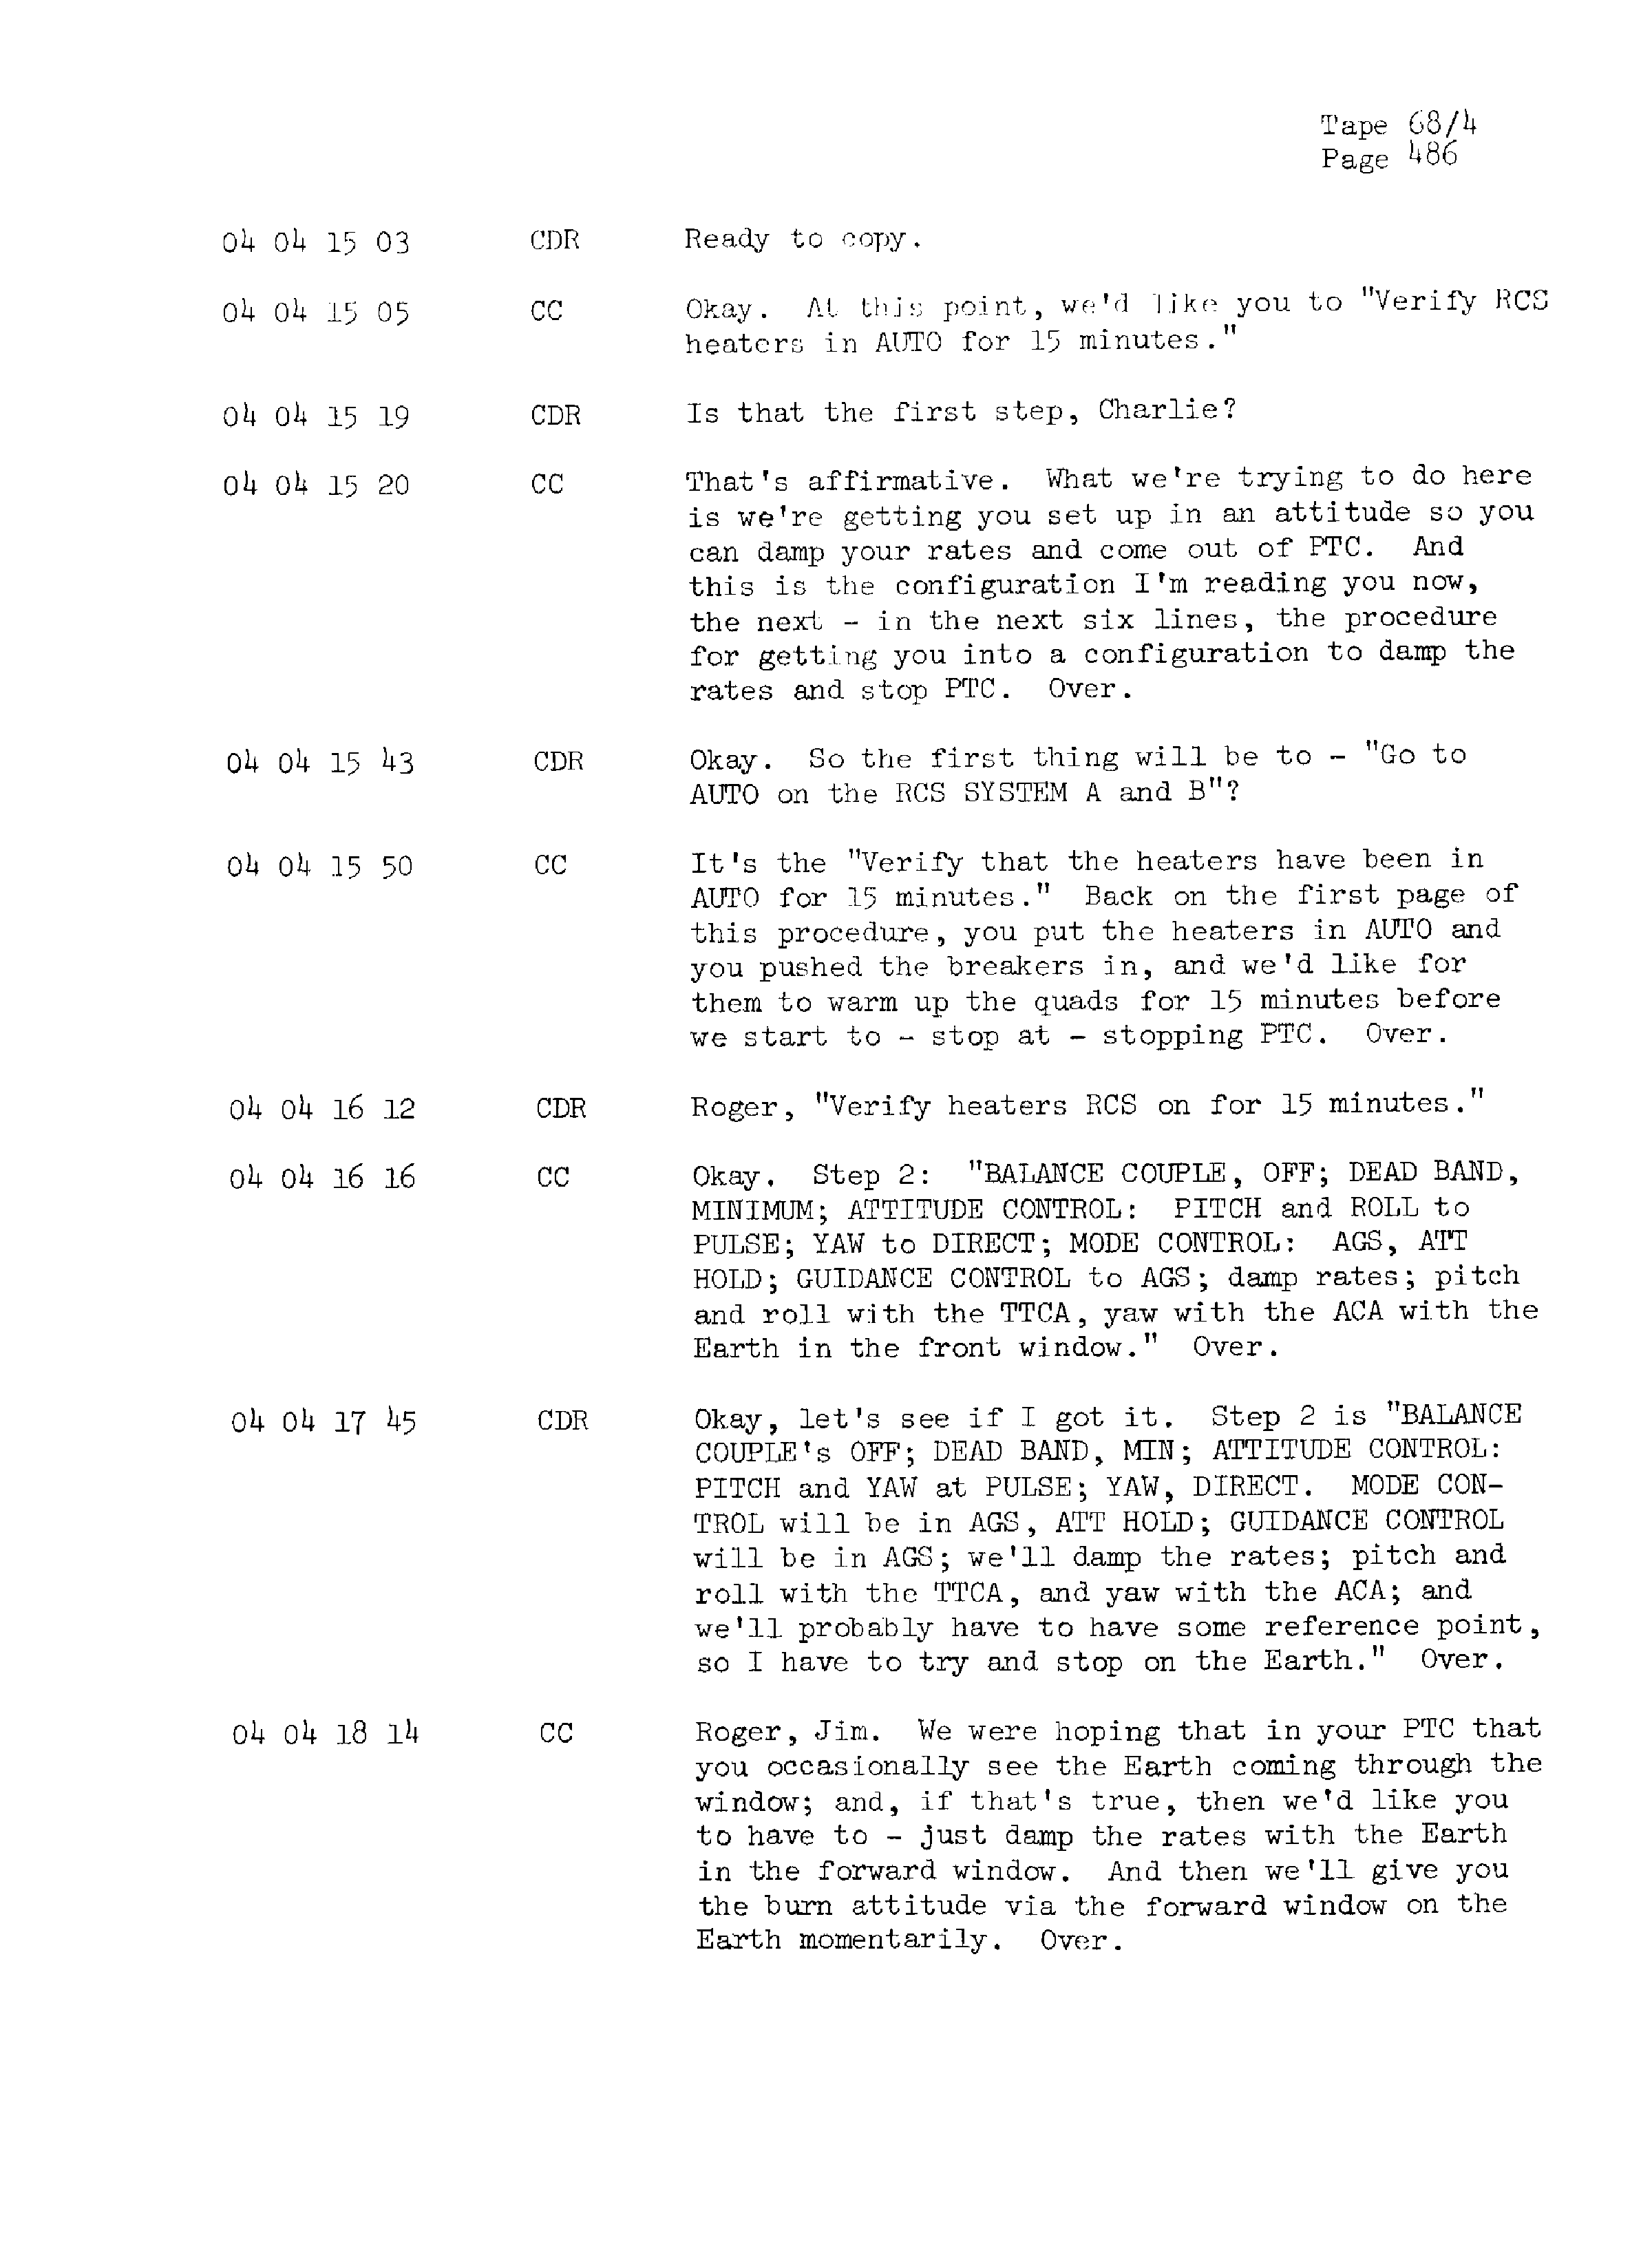 Page 493 of Apollo 13’s original transcript